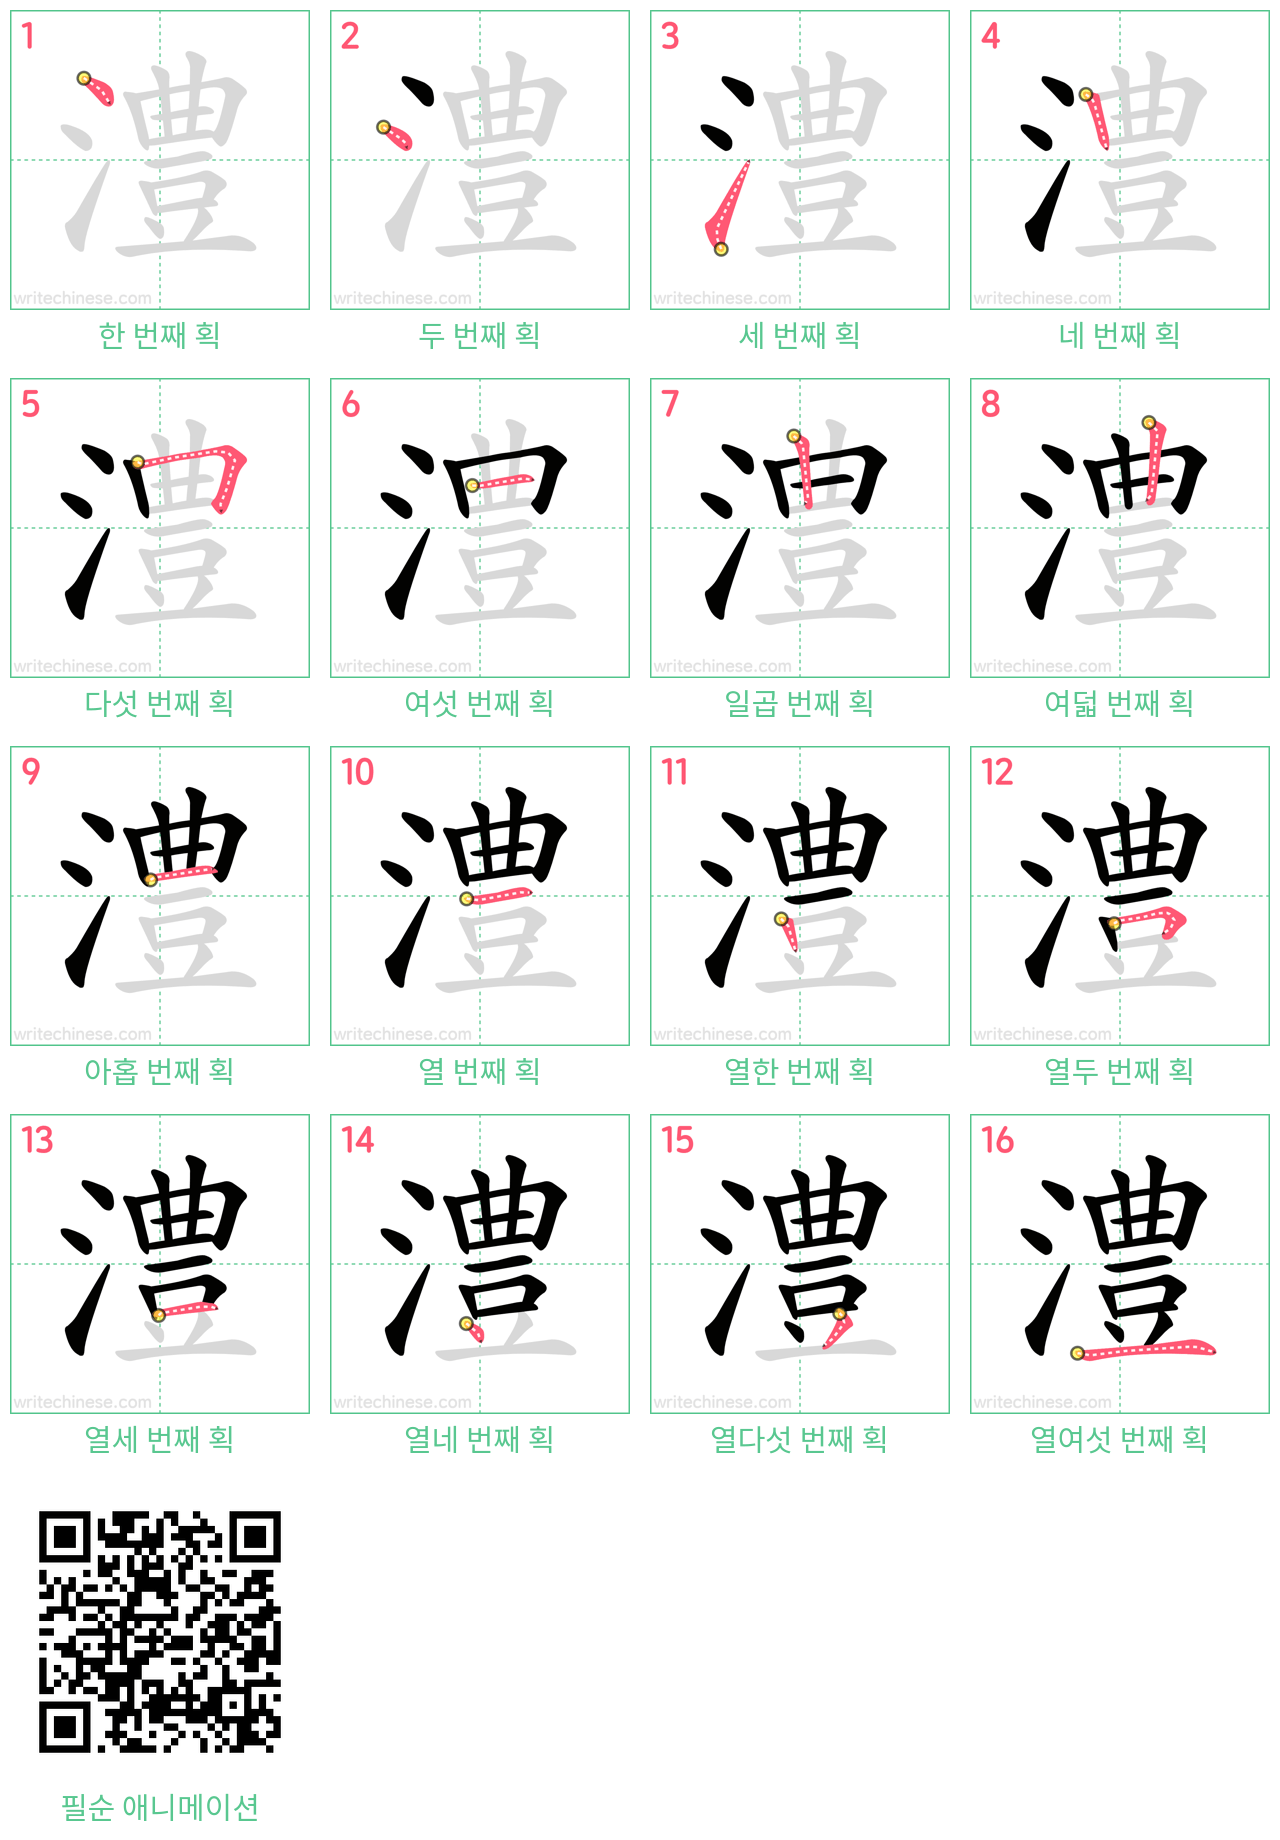 澧 step-by-step stroke order diagrams